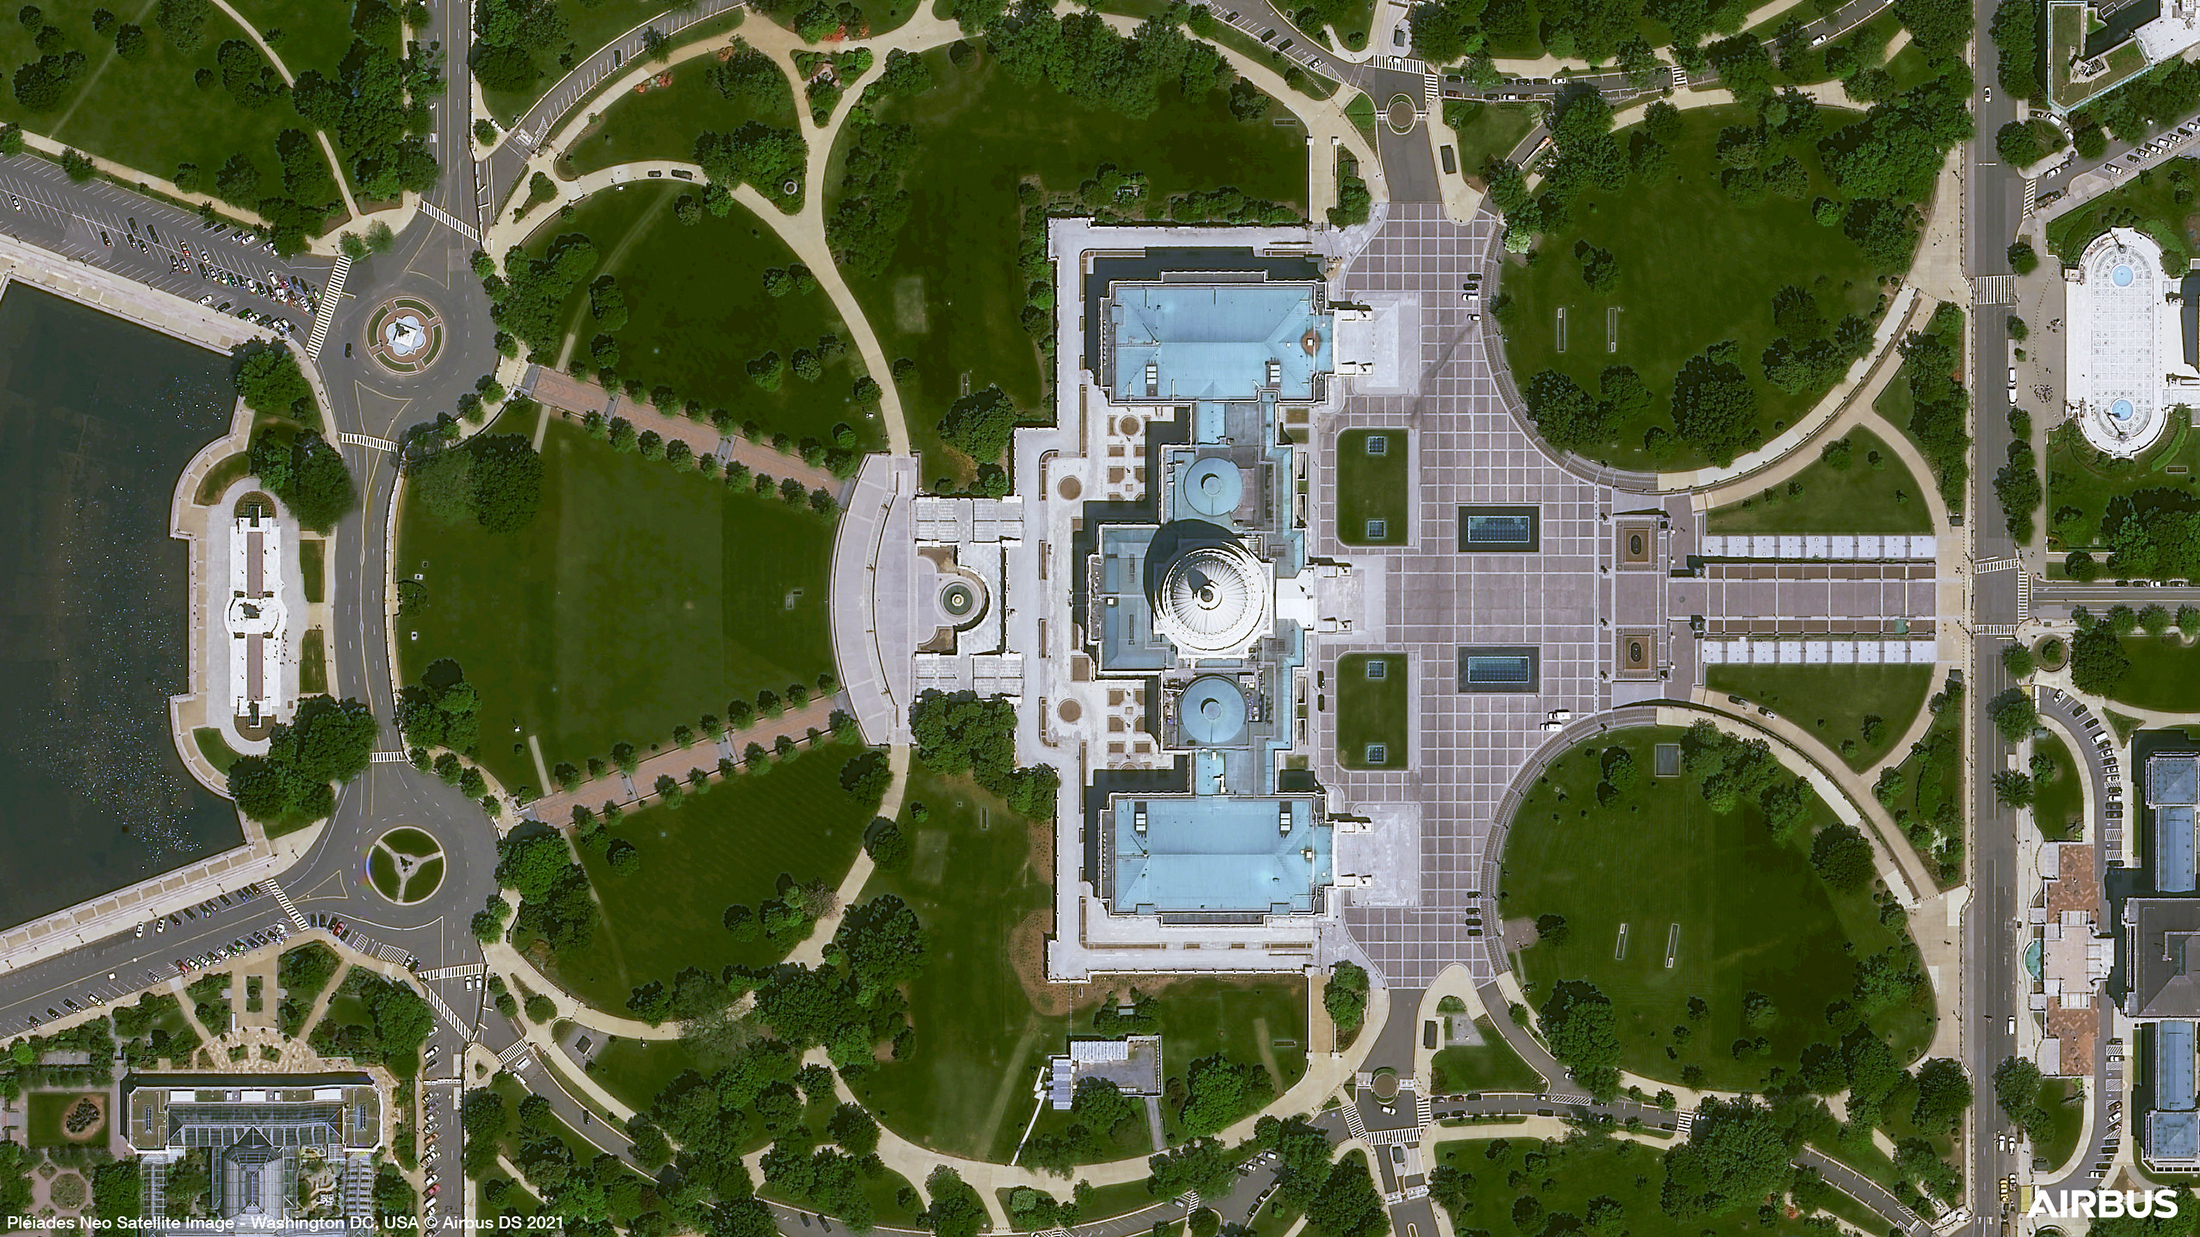 Le Capitole, siège du congrès américain, situé à Washington DC. Cette image est une des cinq « premières images »&nbsp;acquises par le satellite Pléiades Neo 3 d'Airbus. © Airbus&nbsp;DS 2021